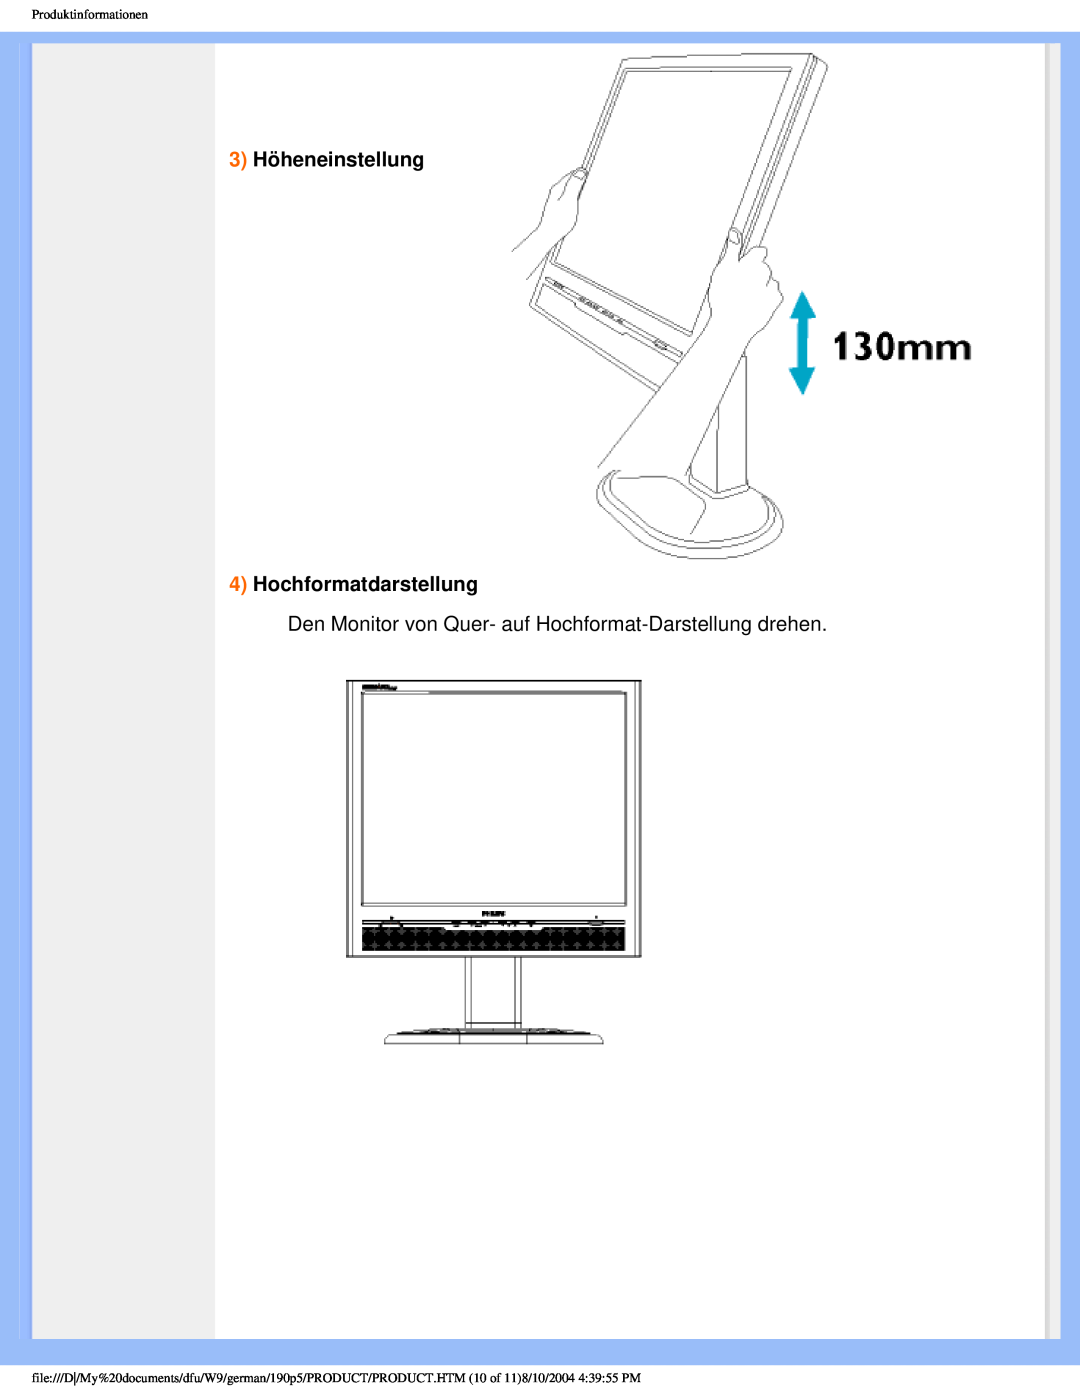 Philips 190P5 3 Höheneinstellung 4 Hochformatdarstellung, Den Monitor von Quer- auf Hochformat-Darstellung drehen 